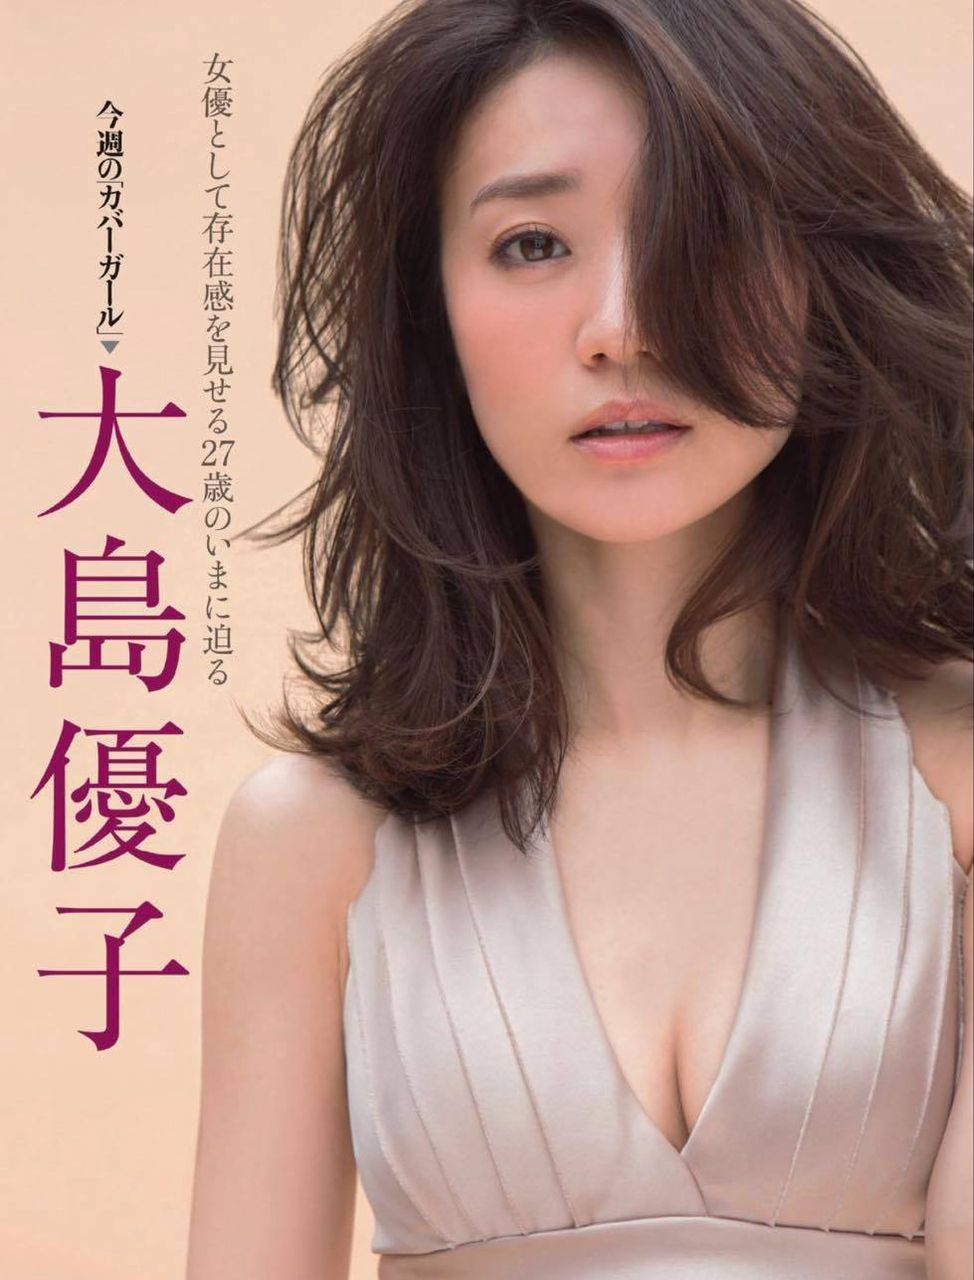 大島優子の乳首ポロリしたヌードエロ画像や胸チラ